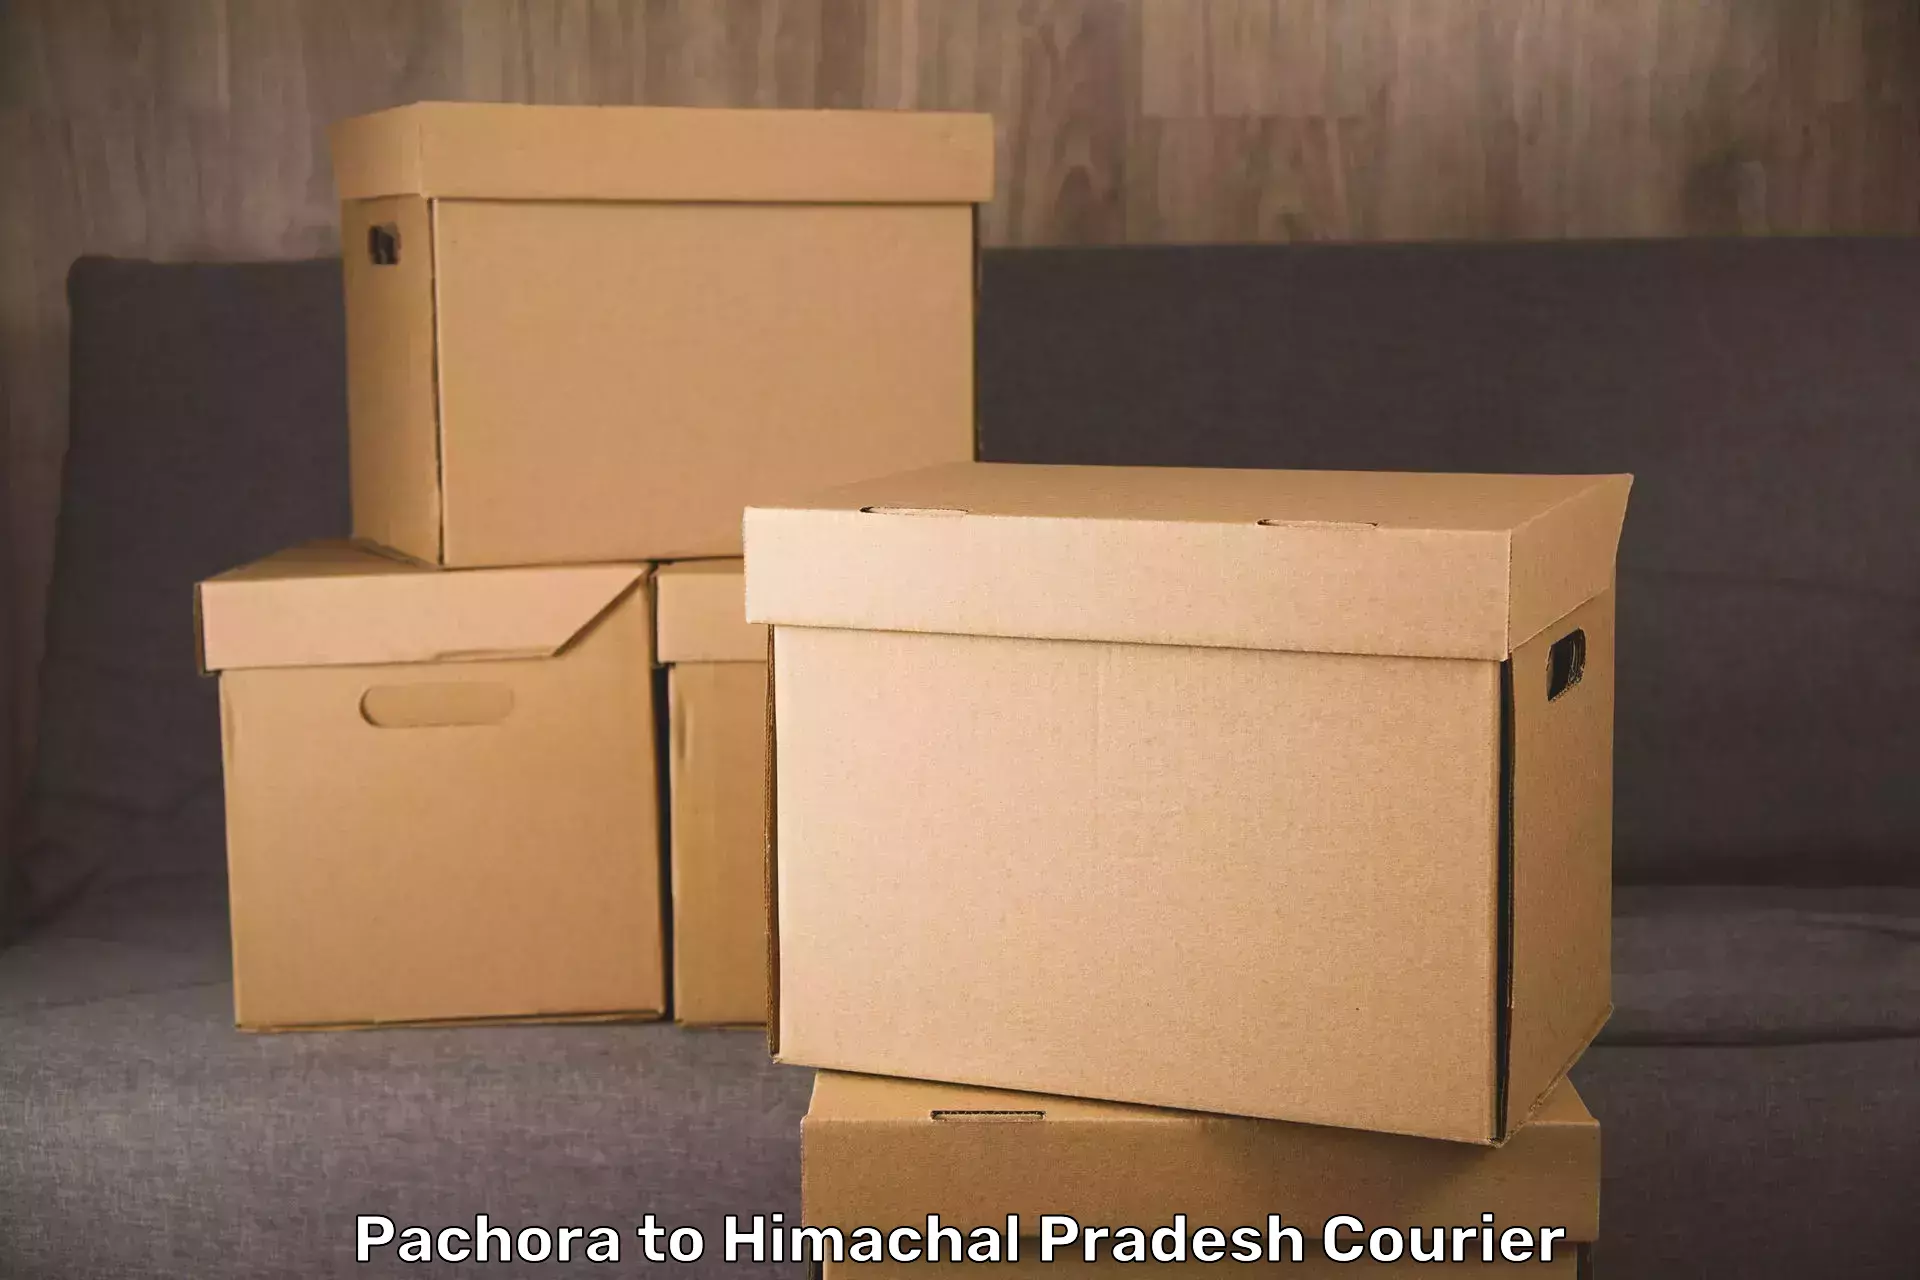 Luggage transfer service Pachora to Jahu